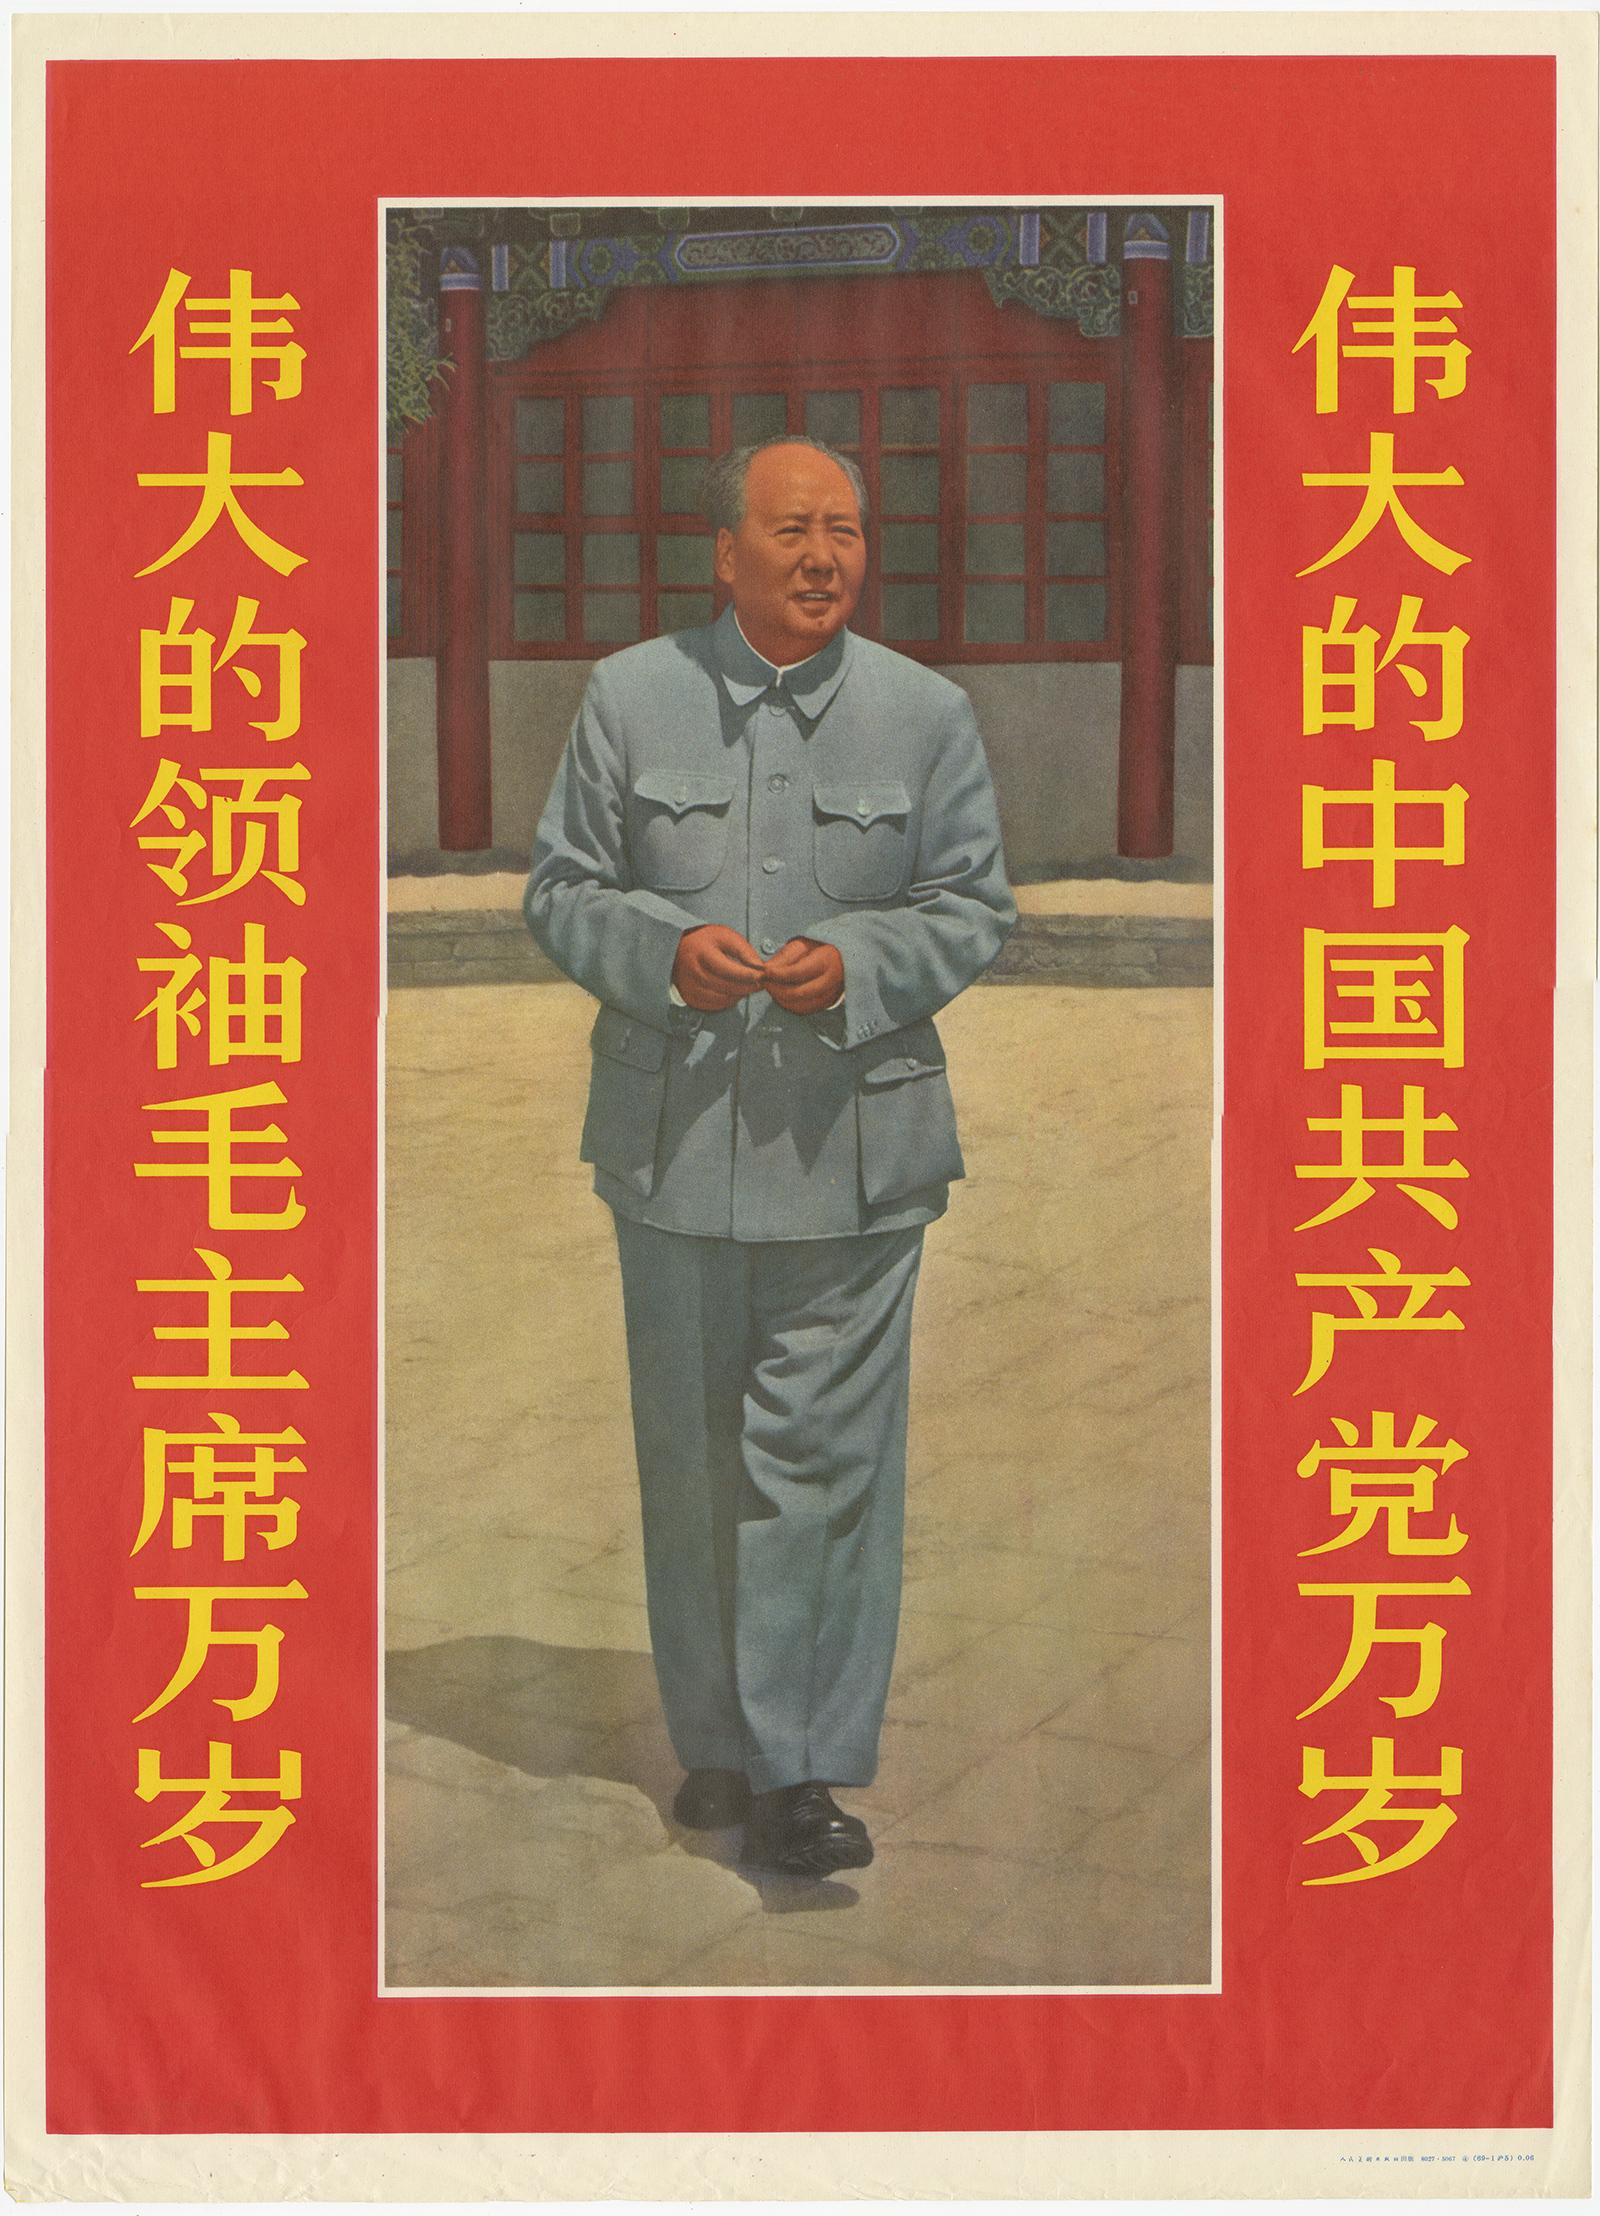 Eine Reihe von fotografischen Propagandapostern mit bekannten Bildern des Vorsitzenden Mao. Mao Zedong, auch bekannt als Vorsitzender Mao, war ein chinesischer kommunistischer Revolutionär, der zum Gründervater der Volksrepublik China (VRC) wurde,